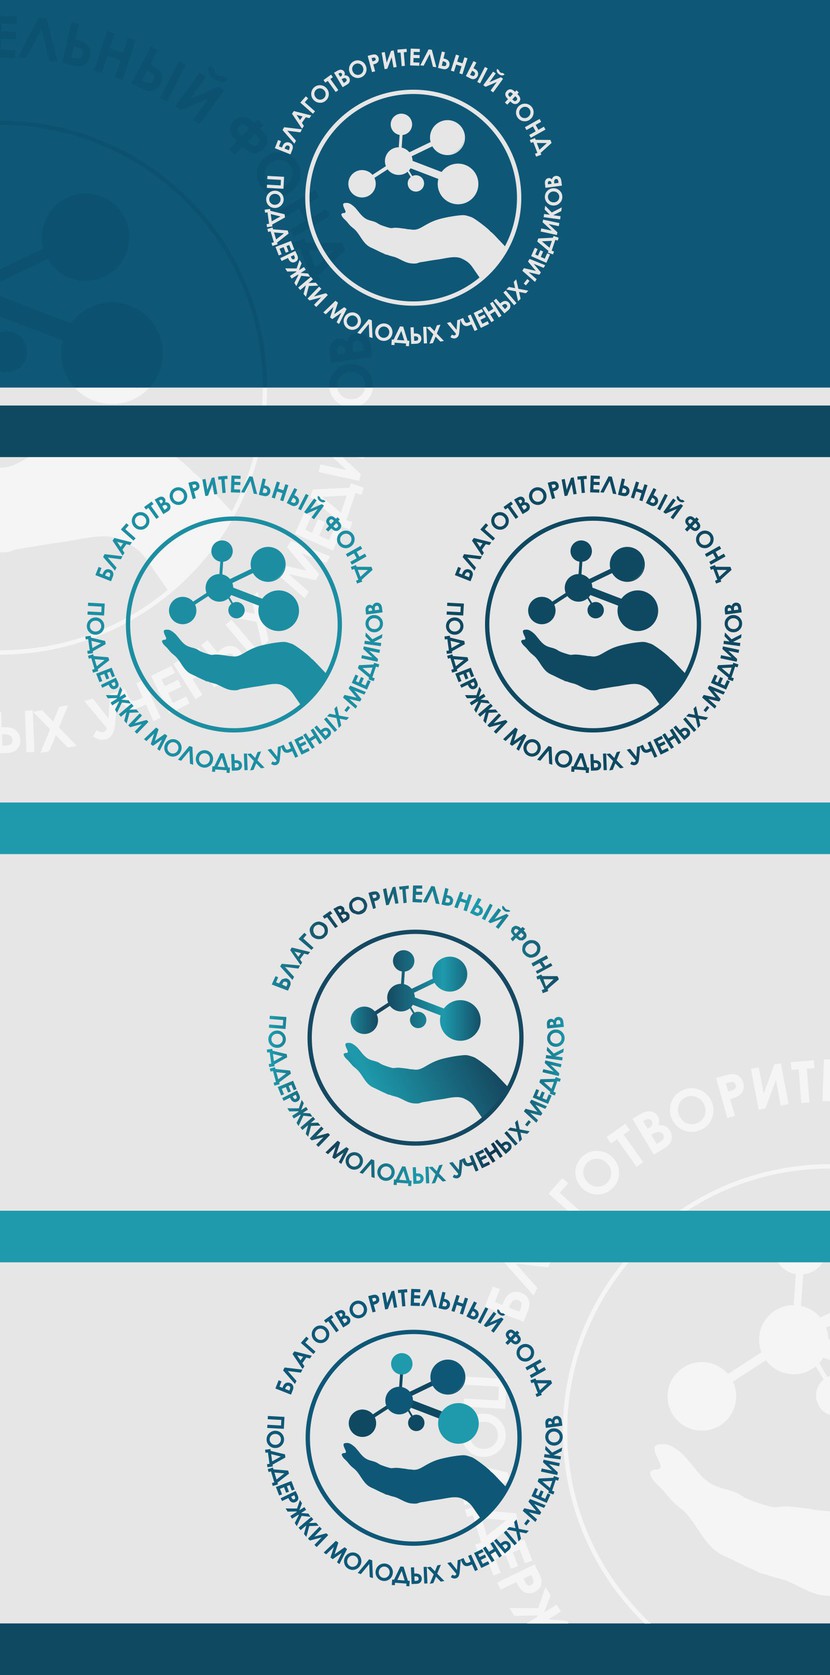 Доработанные варианты логотипов.
№4 - Лого Фонда поддержки молодых ученых-медиков